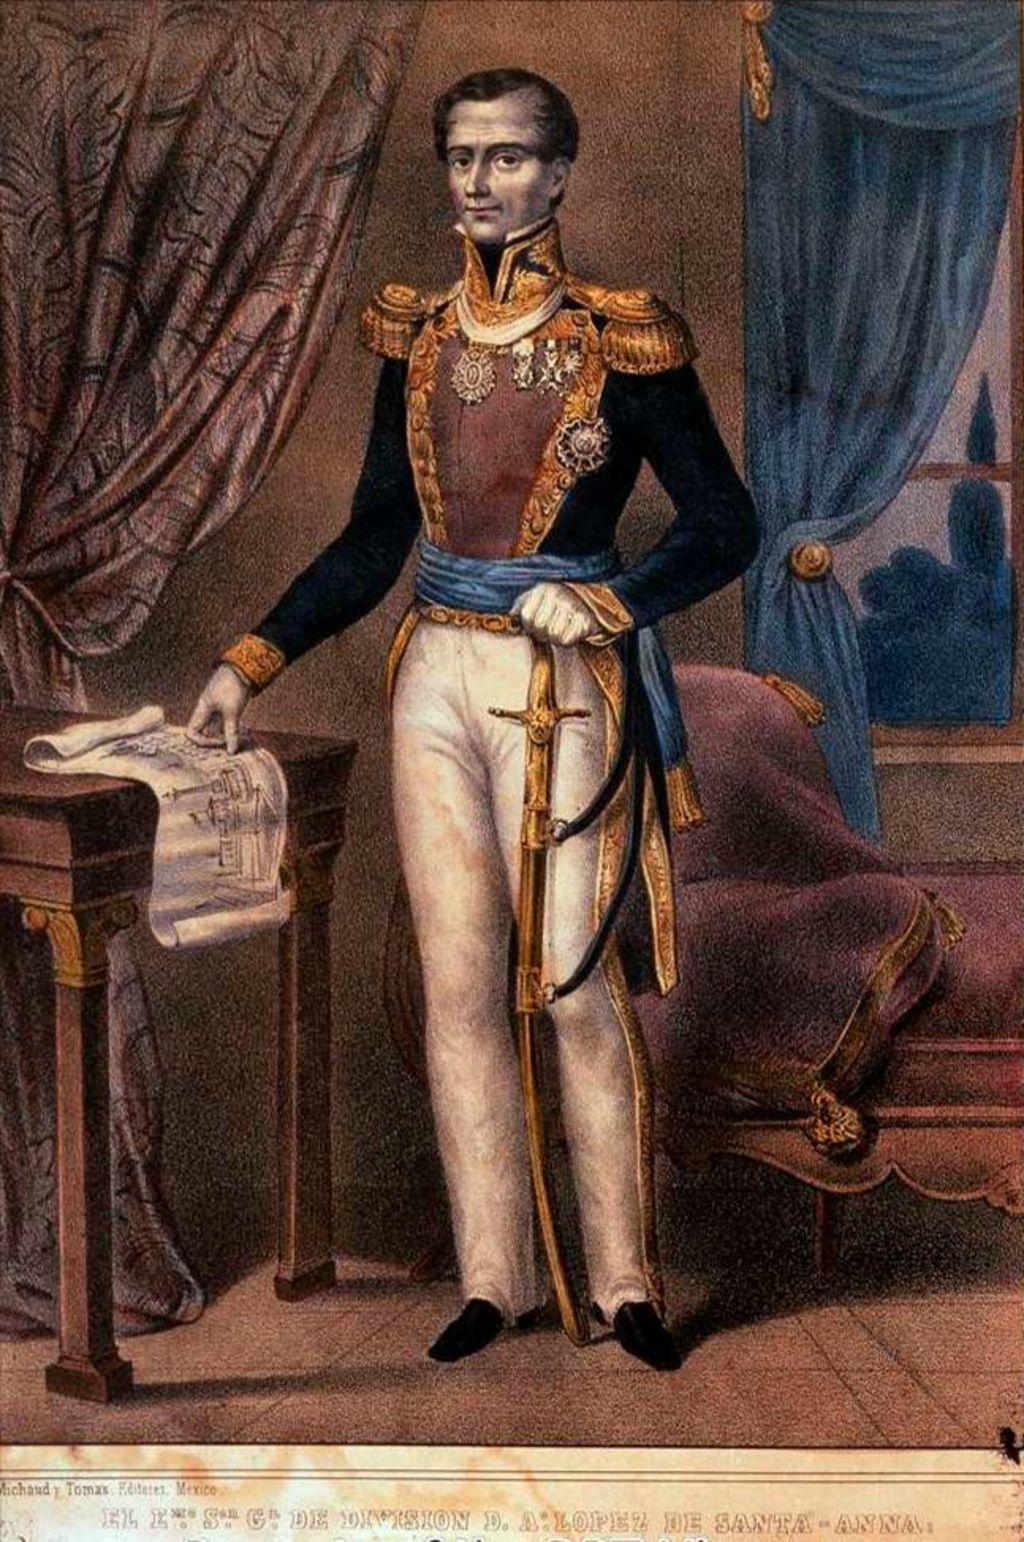 El imprescindible: Antonio López de Santa Anna como Generalísimo de los Ejércitos Mexicanos.